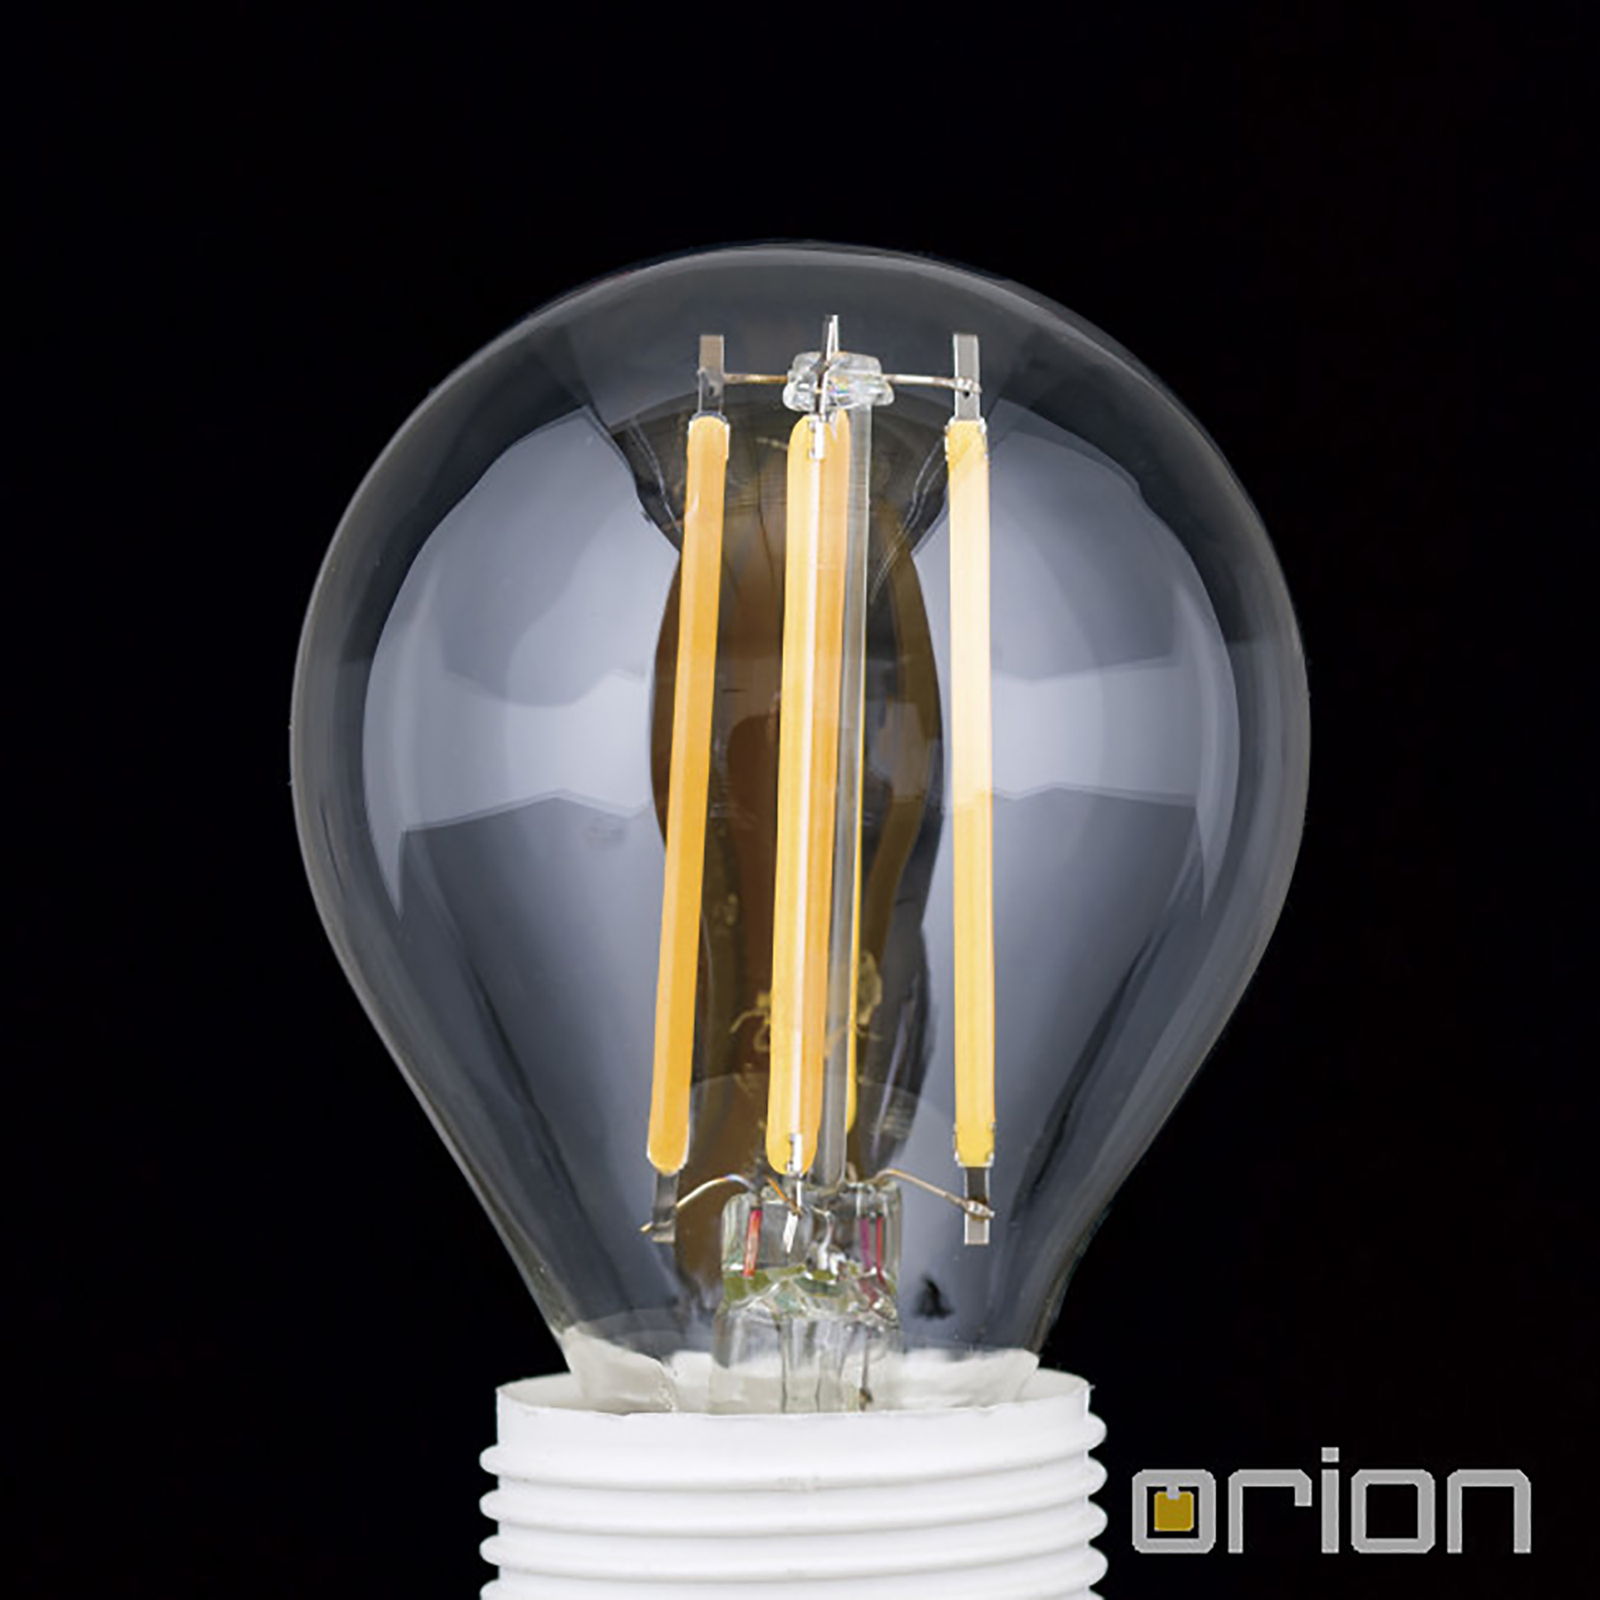 A gota LED E14 4,5W filamento 827 atenuable